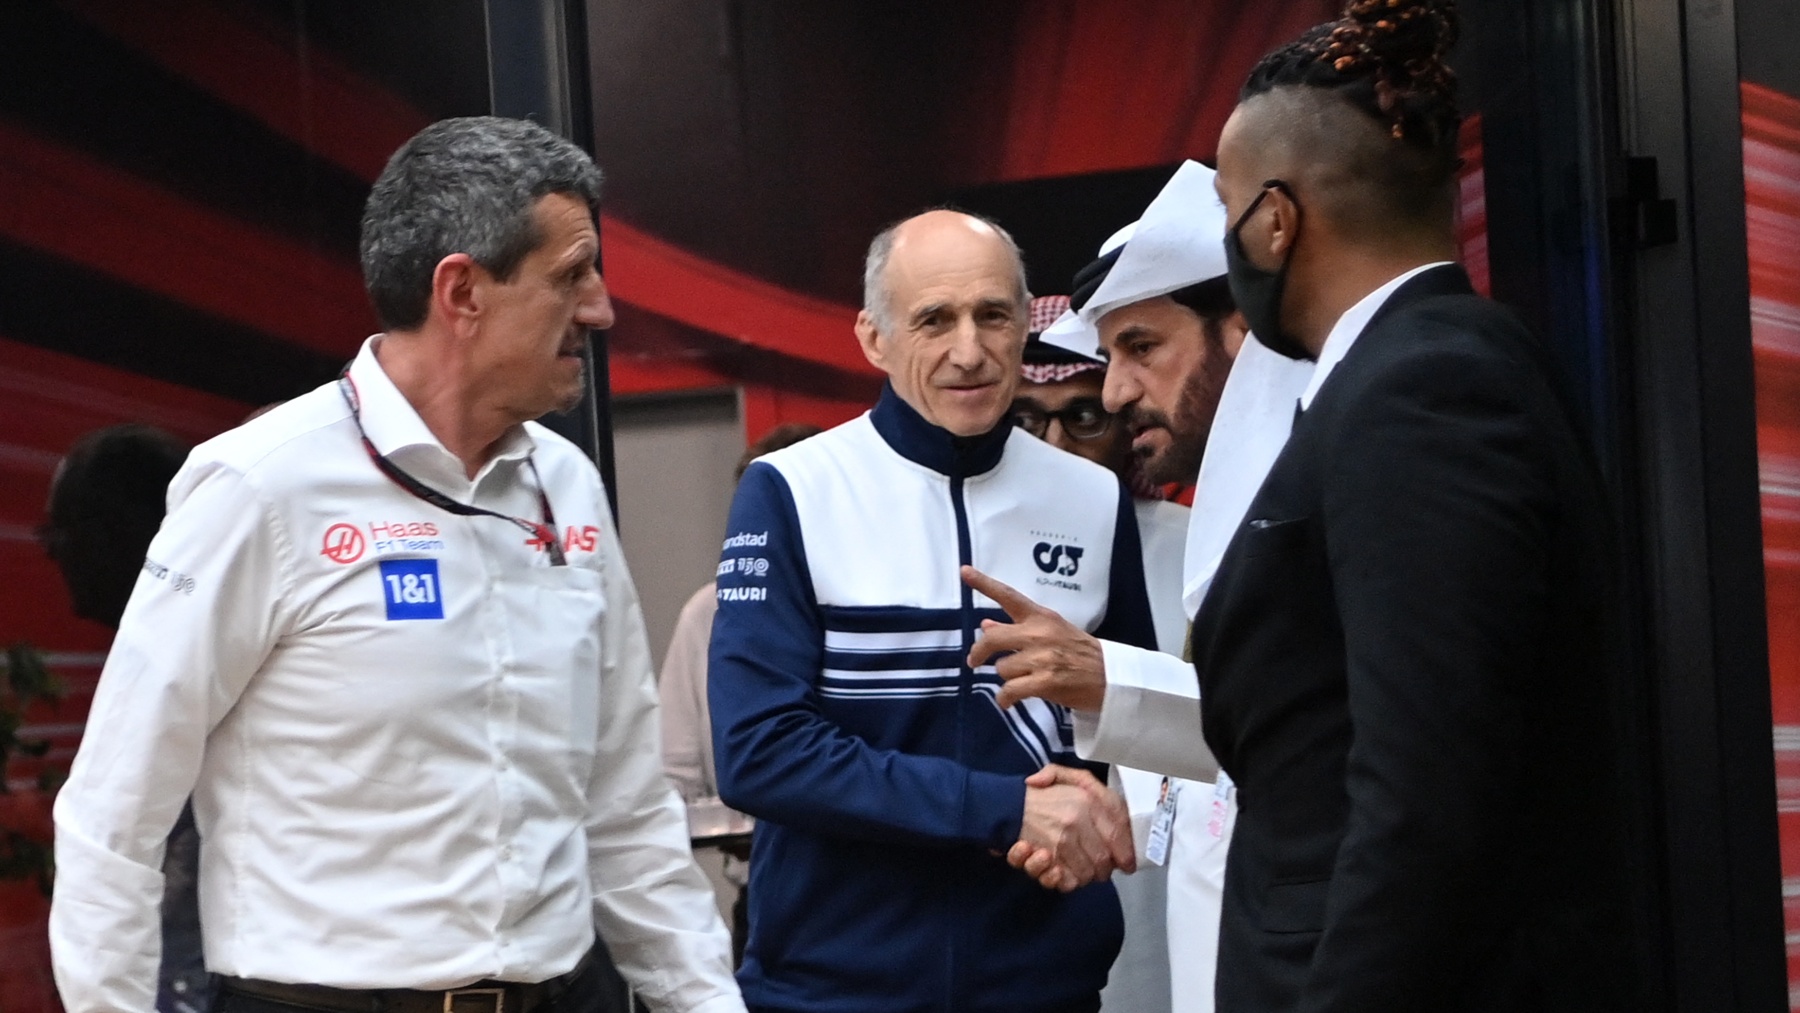 El presidente de la FIA con varios directores de equipo. (AFP)